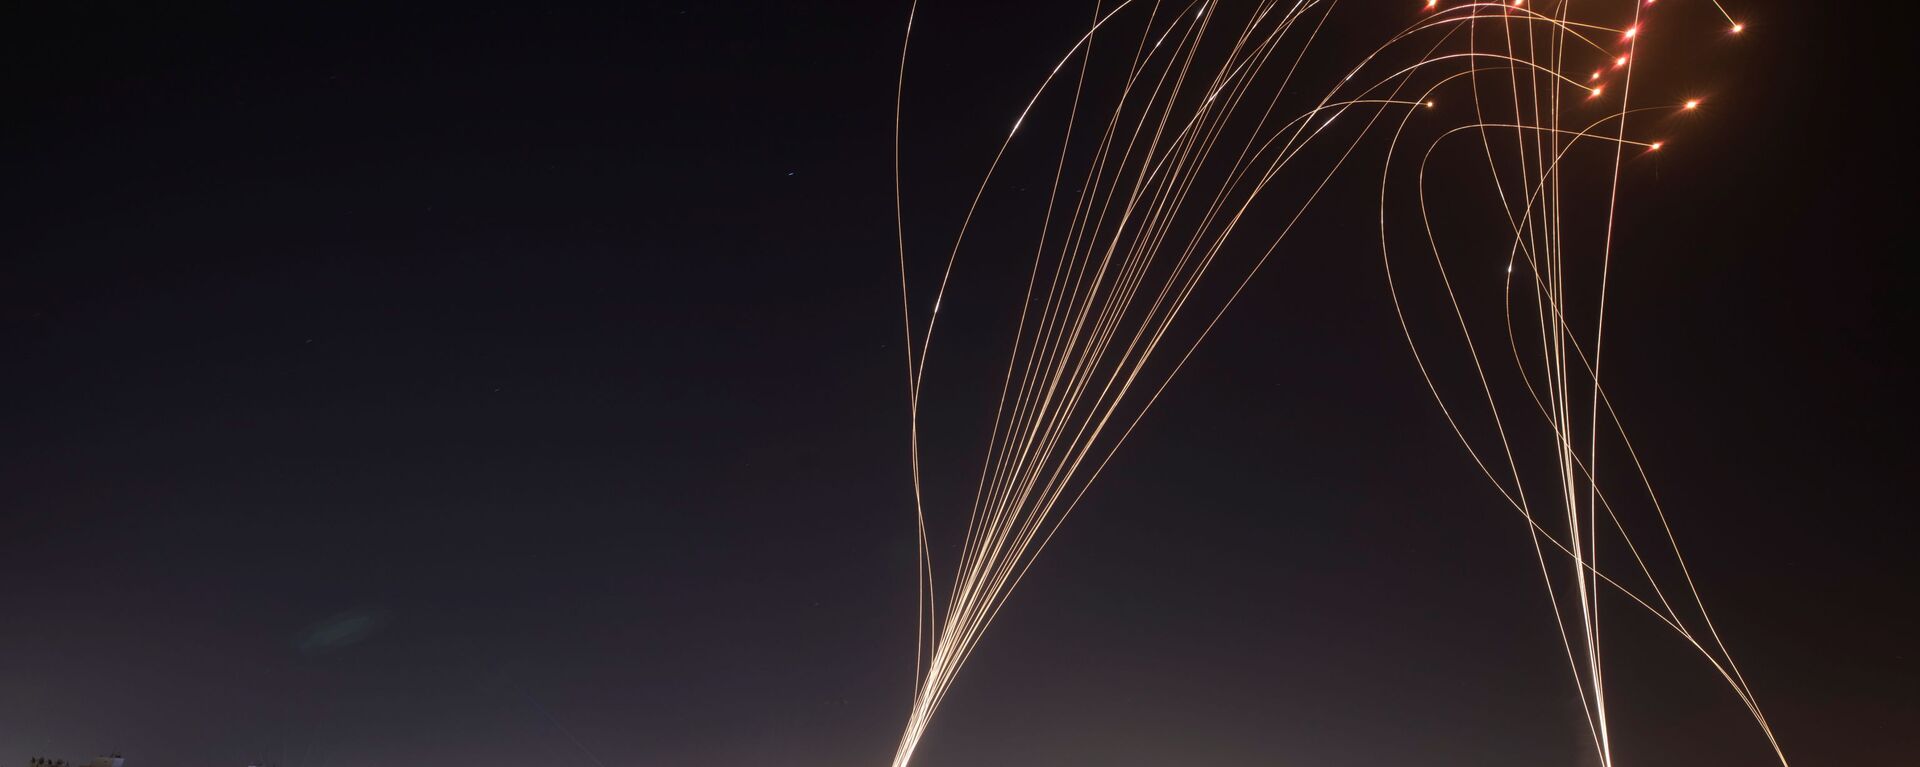 Израелски систем ПРО „Гвоздена купола“ (Iron Dome) пресреће ракете, лансиране из сектора Газа у правцу Израела  - Sputnik Србија, 1920, 15.05.2021